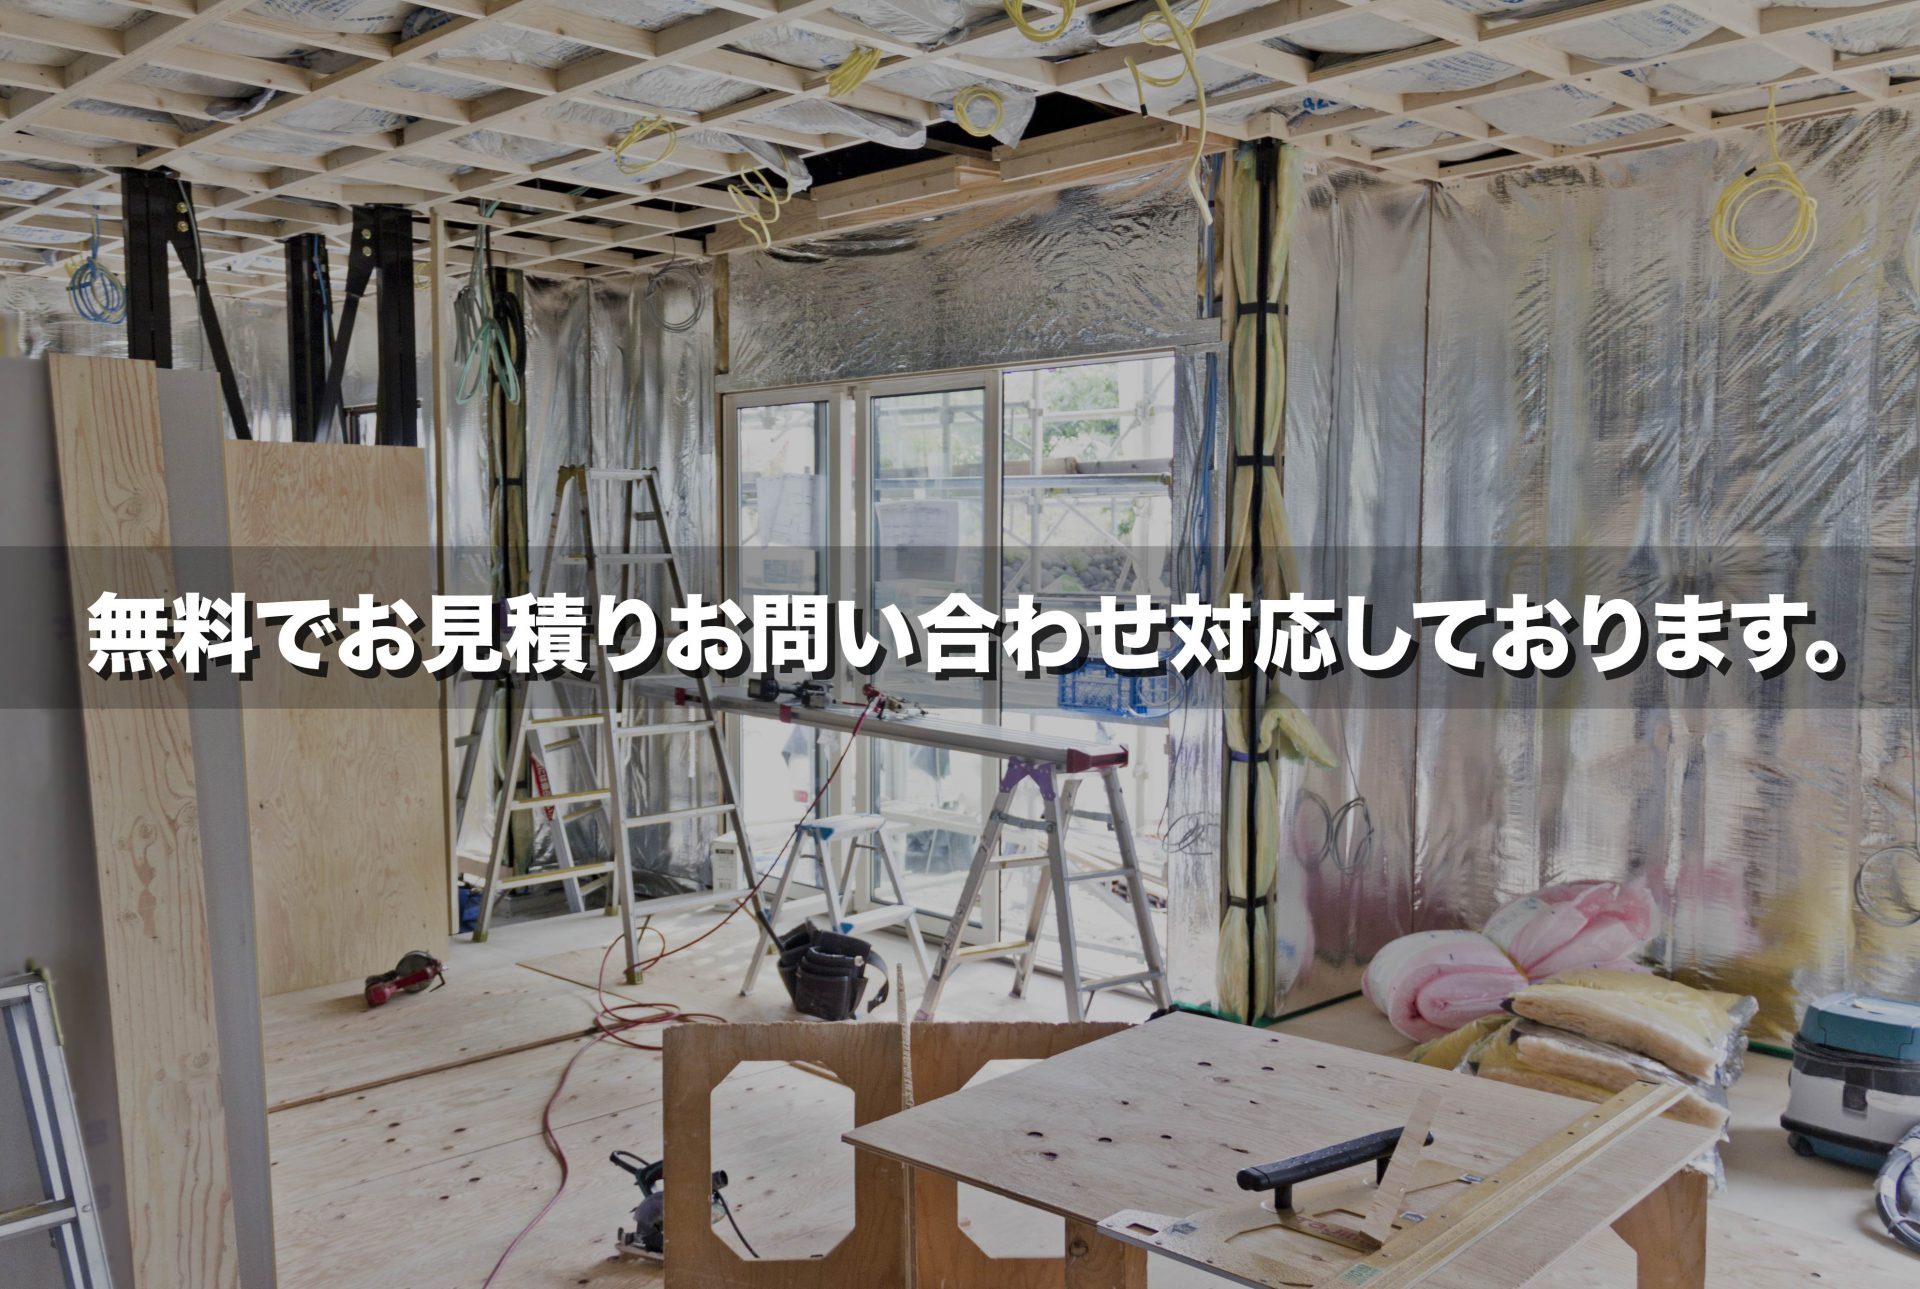 名古屋電気工事のプロフェッショナルチームに、安心かつ簡単にお問い合わせできます。